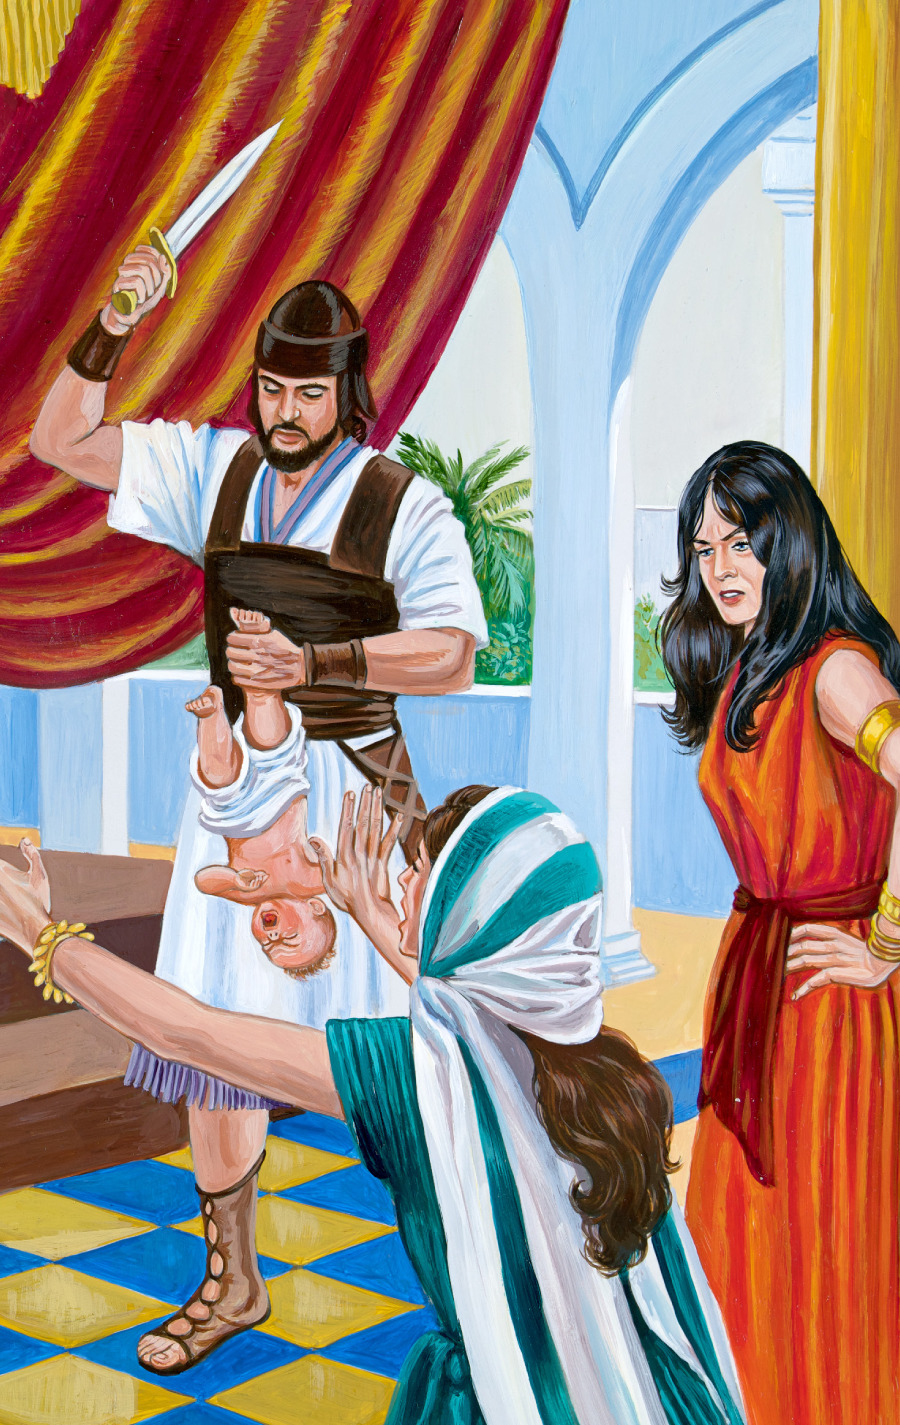 Fiel es suficiente Persona enferma El sabio rey Salomón | Historia bíblica